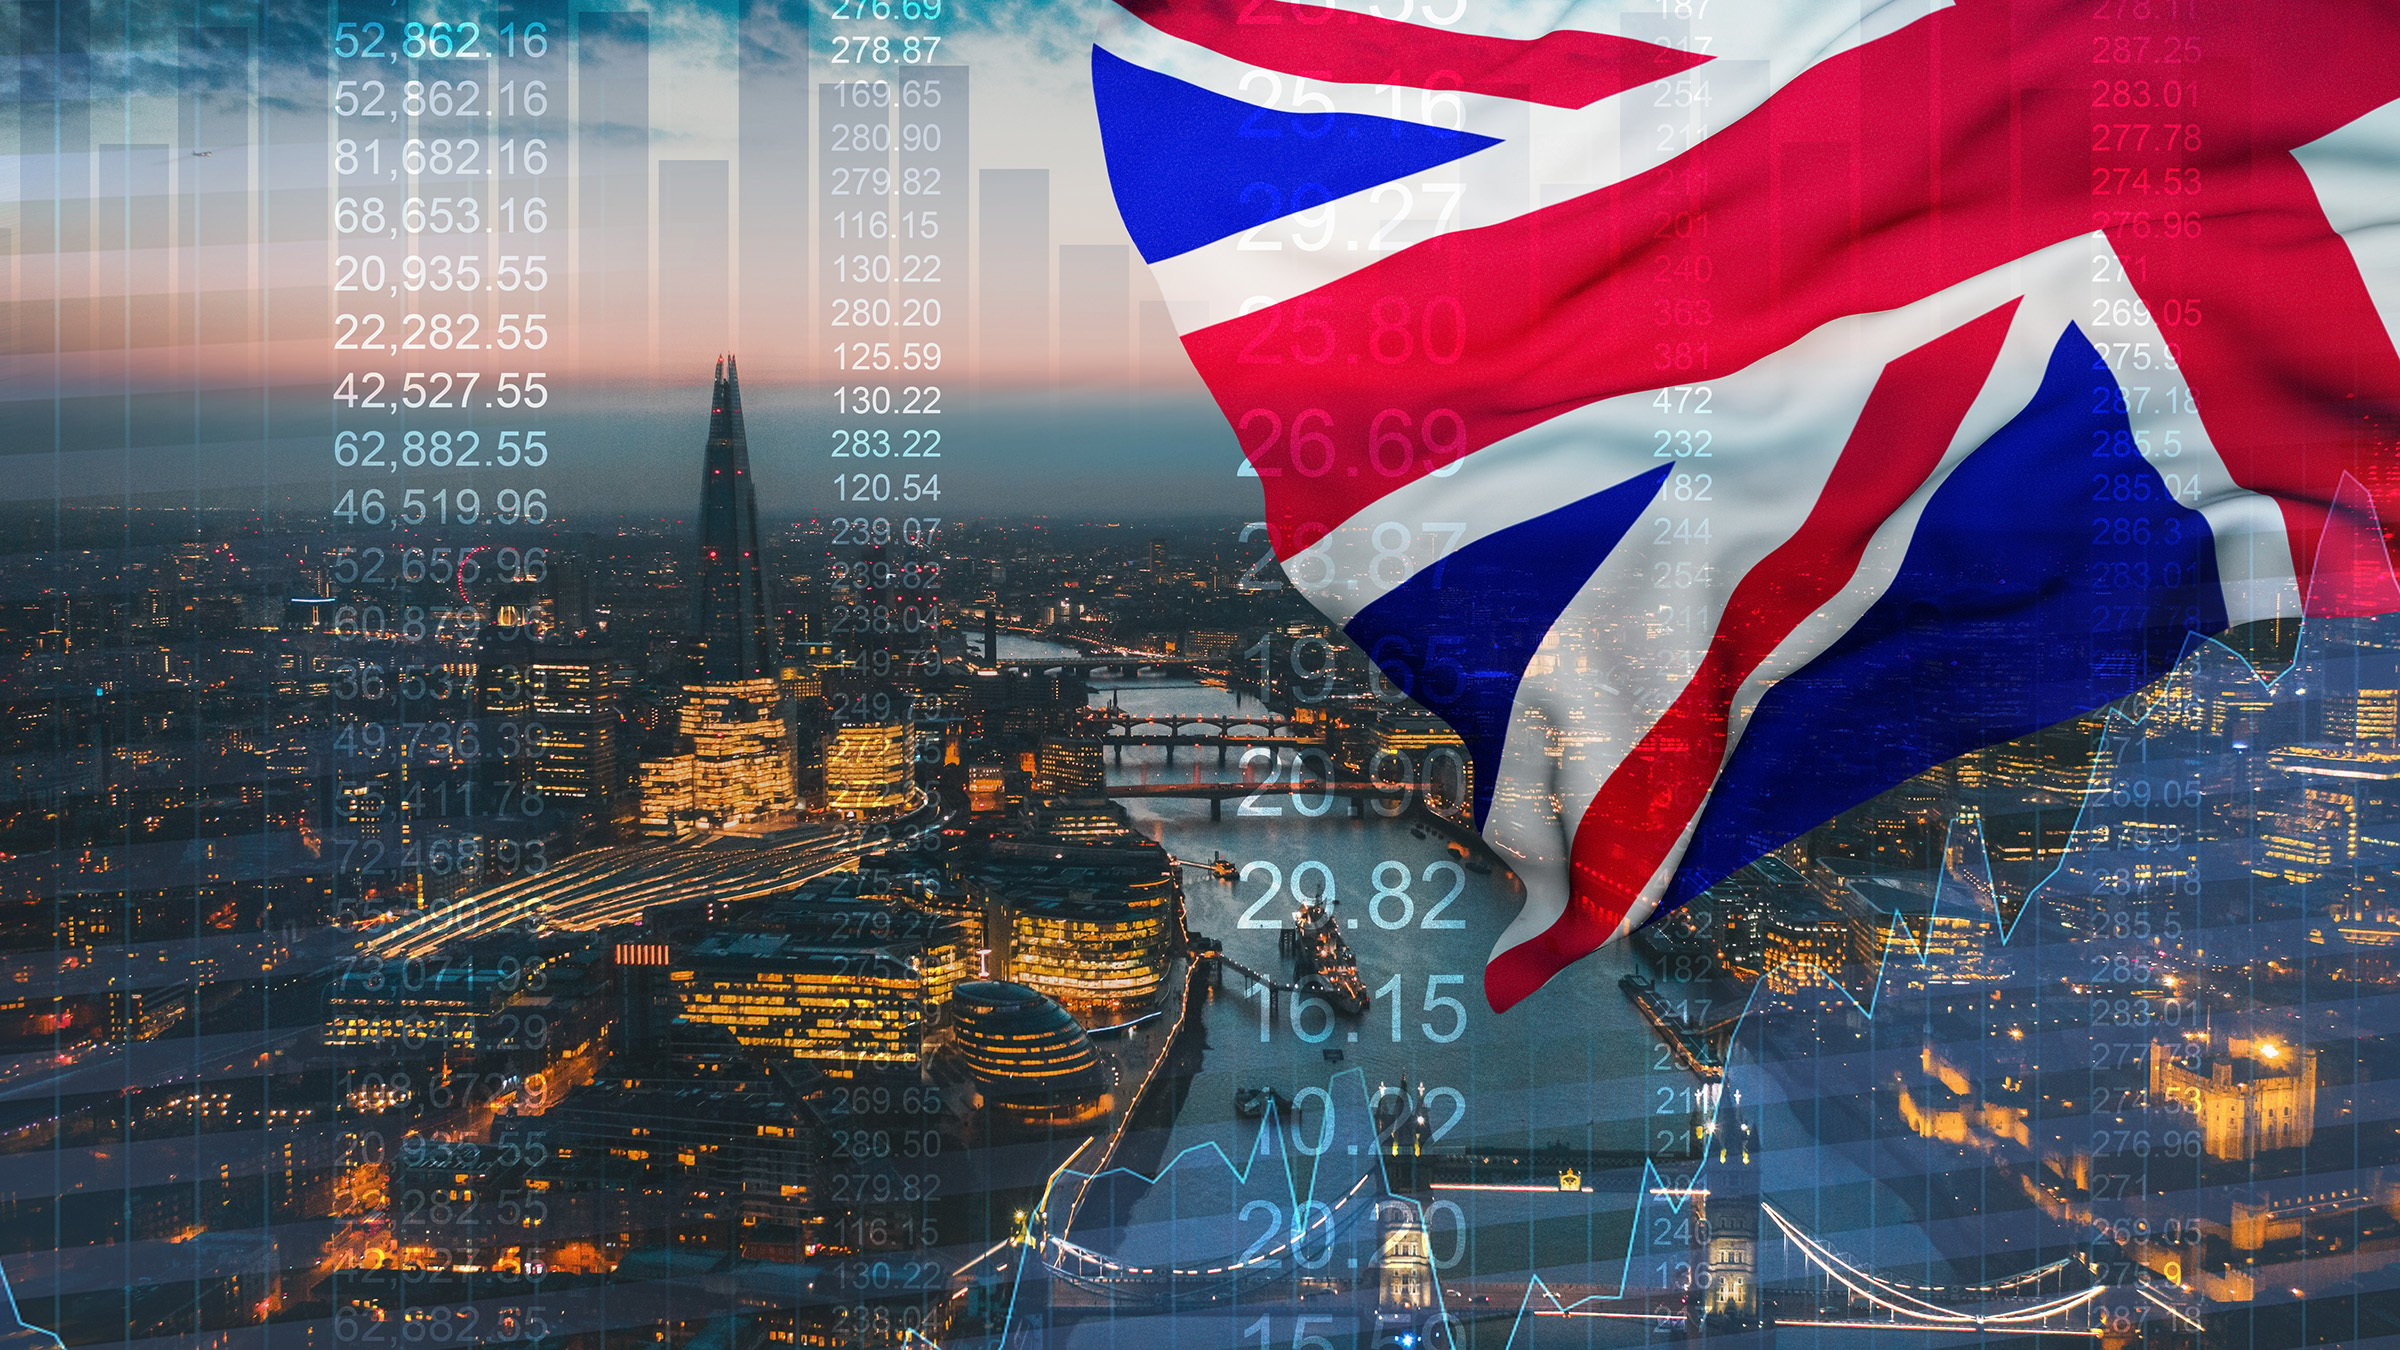 【速報】UK Leads Cryptocurrency Activity in Europe